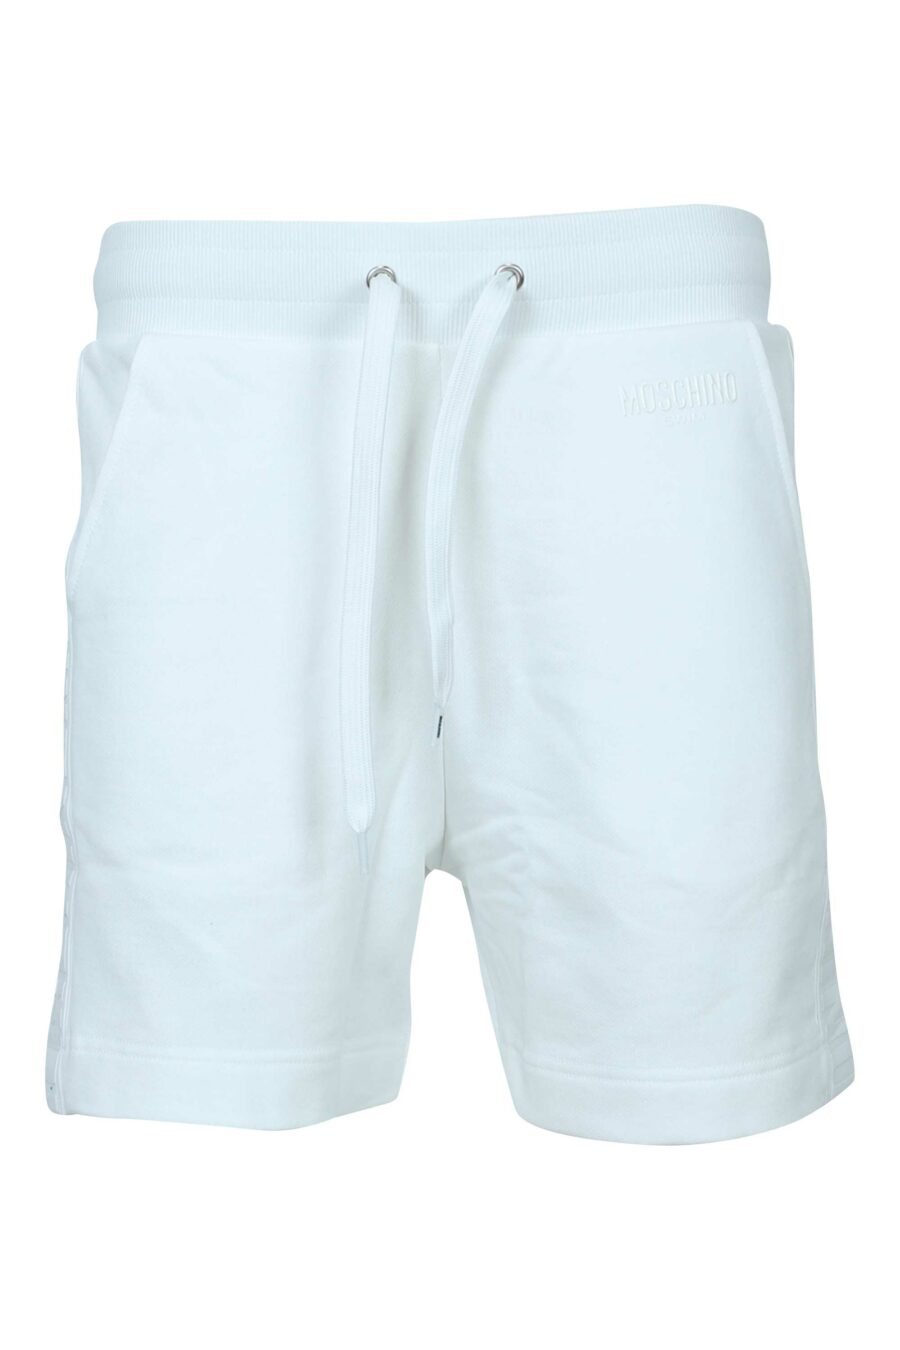 Pantalón de chándal blanco corto con logo monocromático de goma lateral - 667113684420